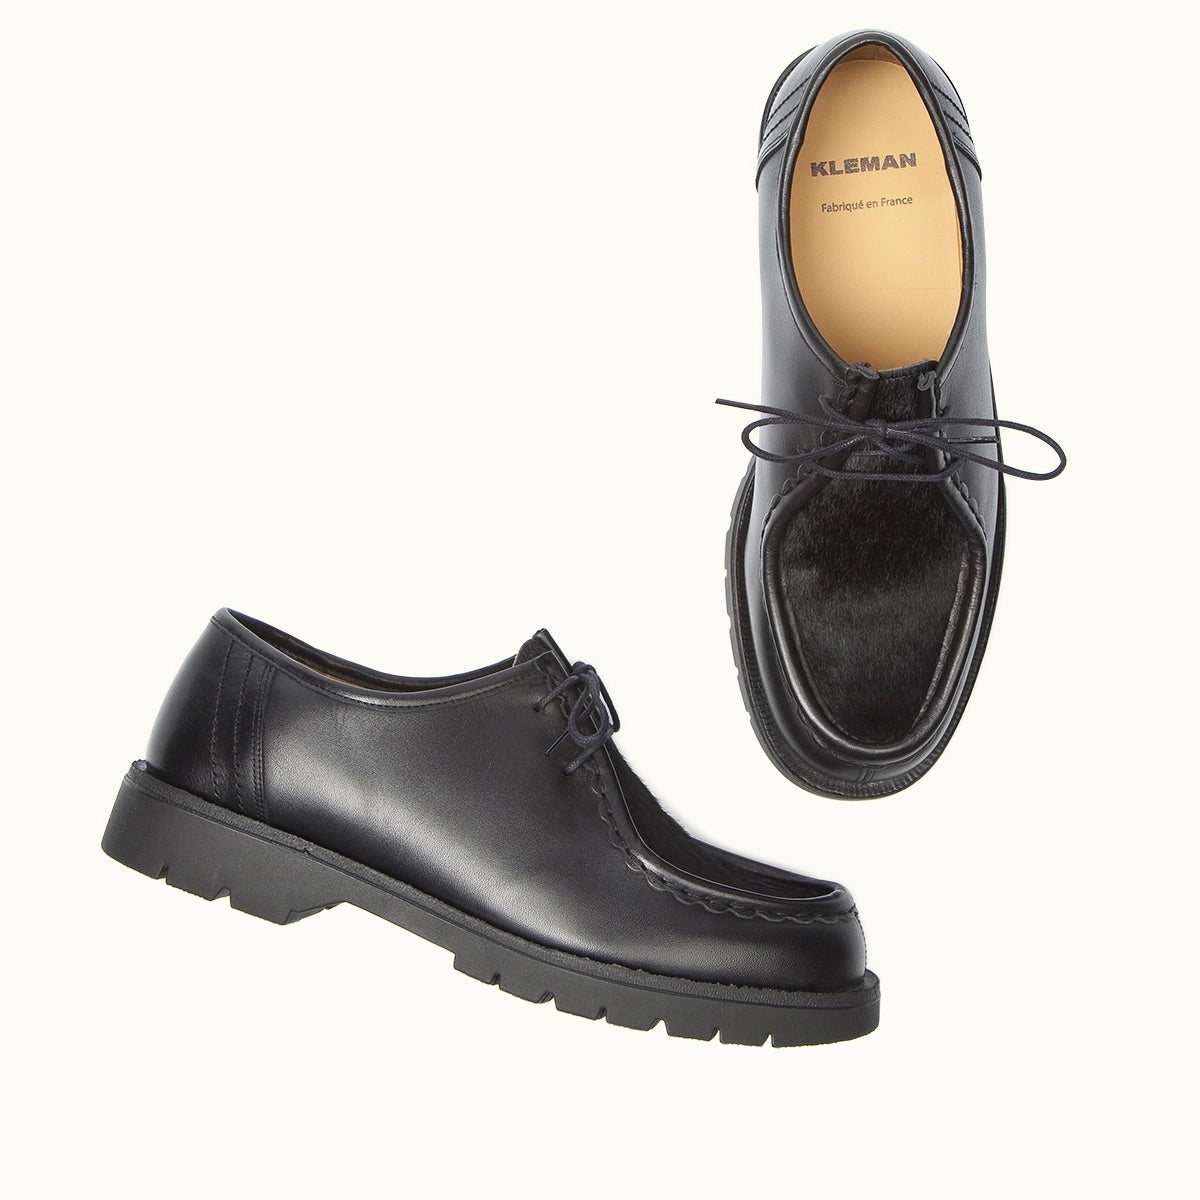 Kleman Padrini Noir Black Derby Shoes